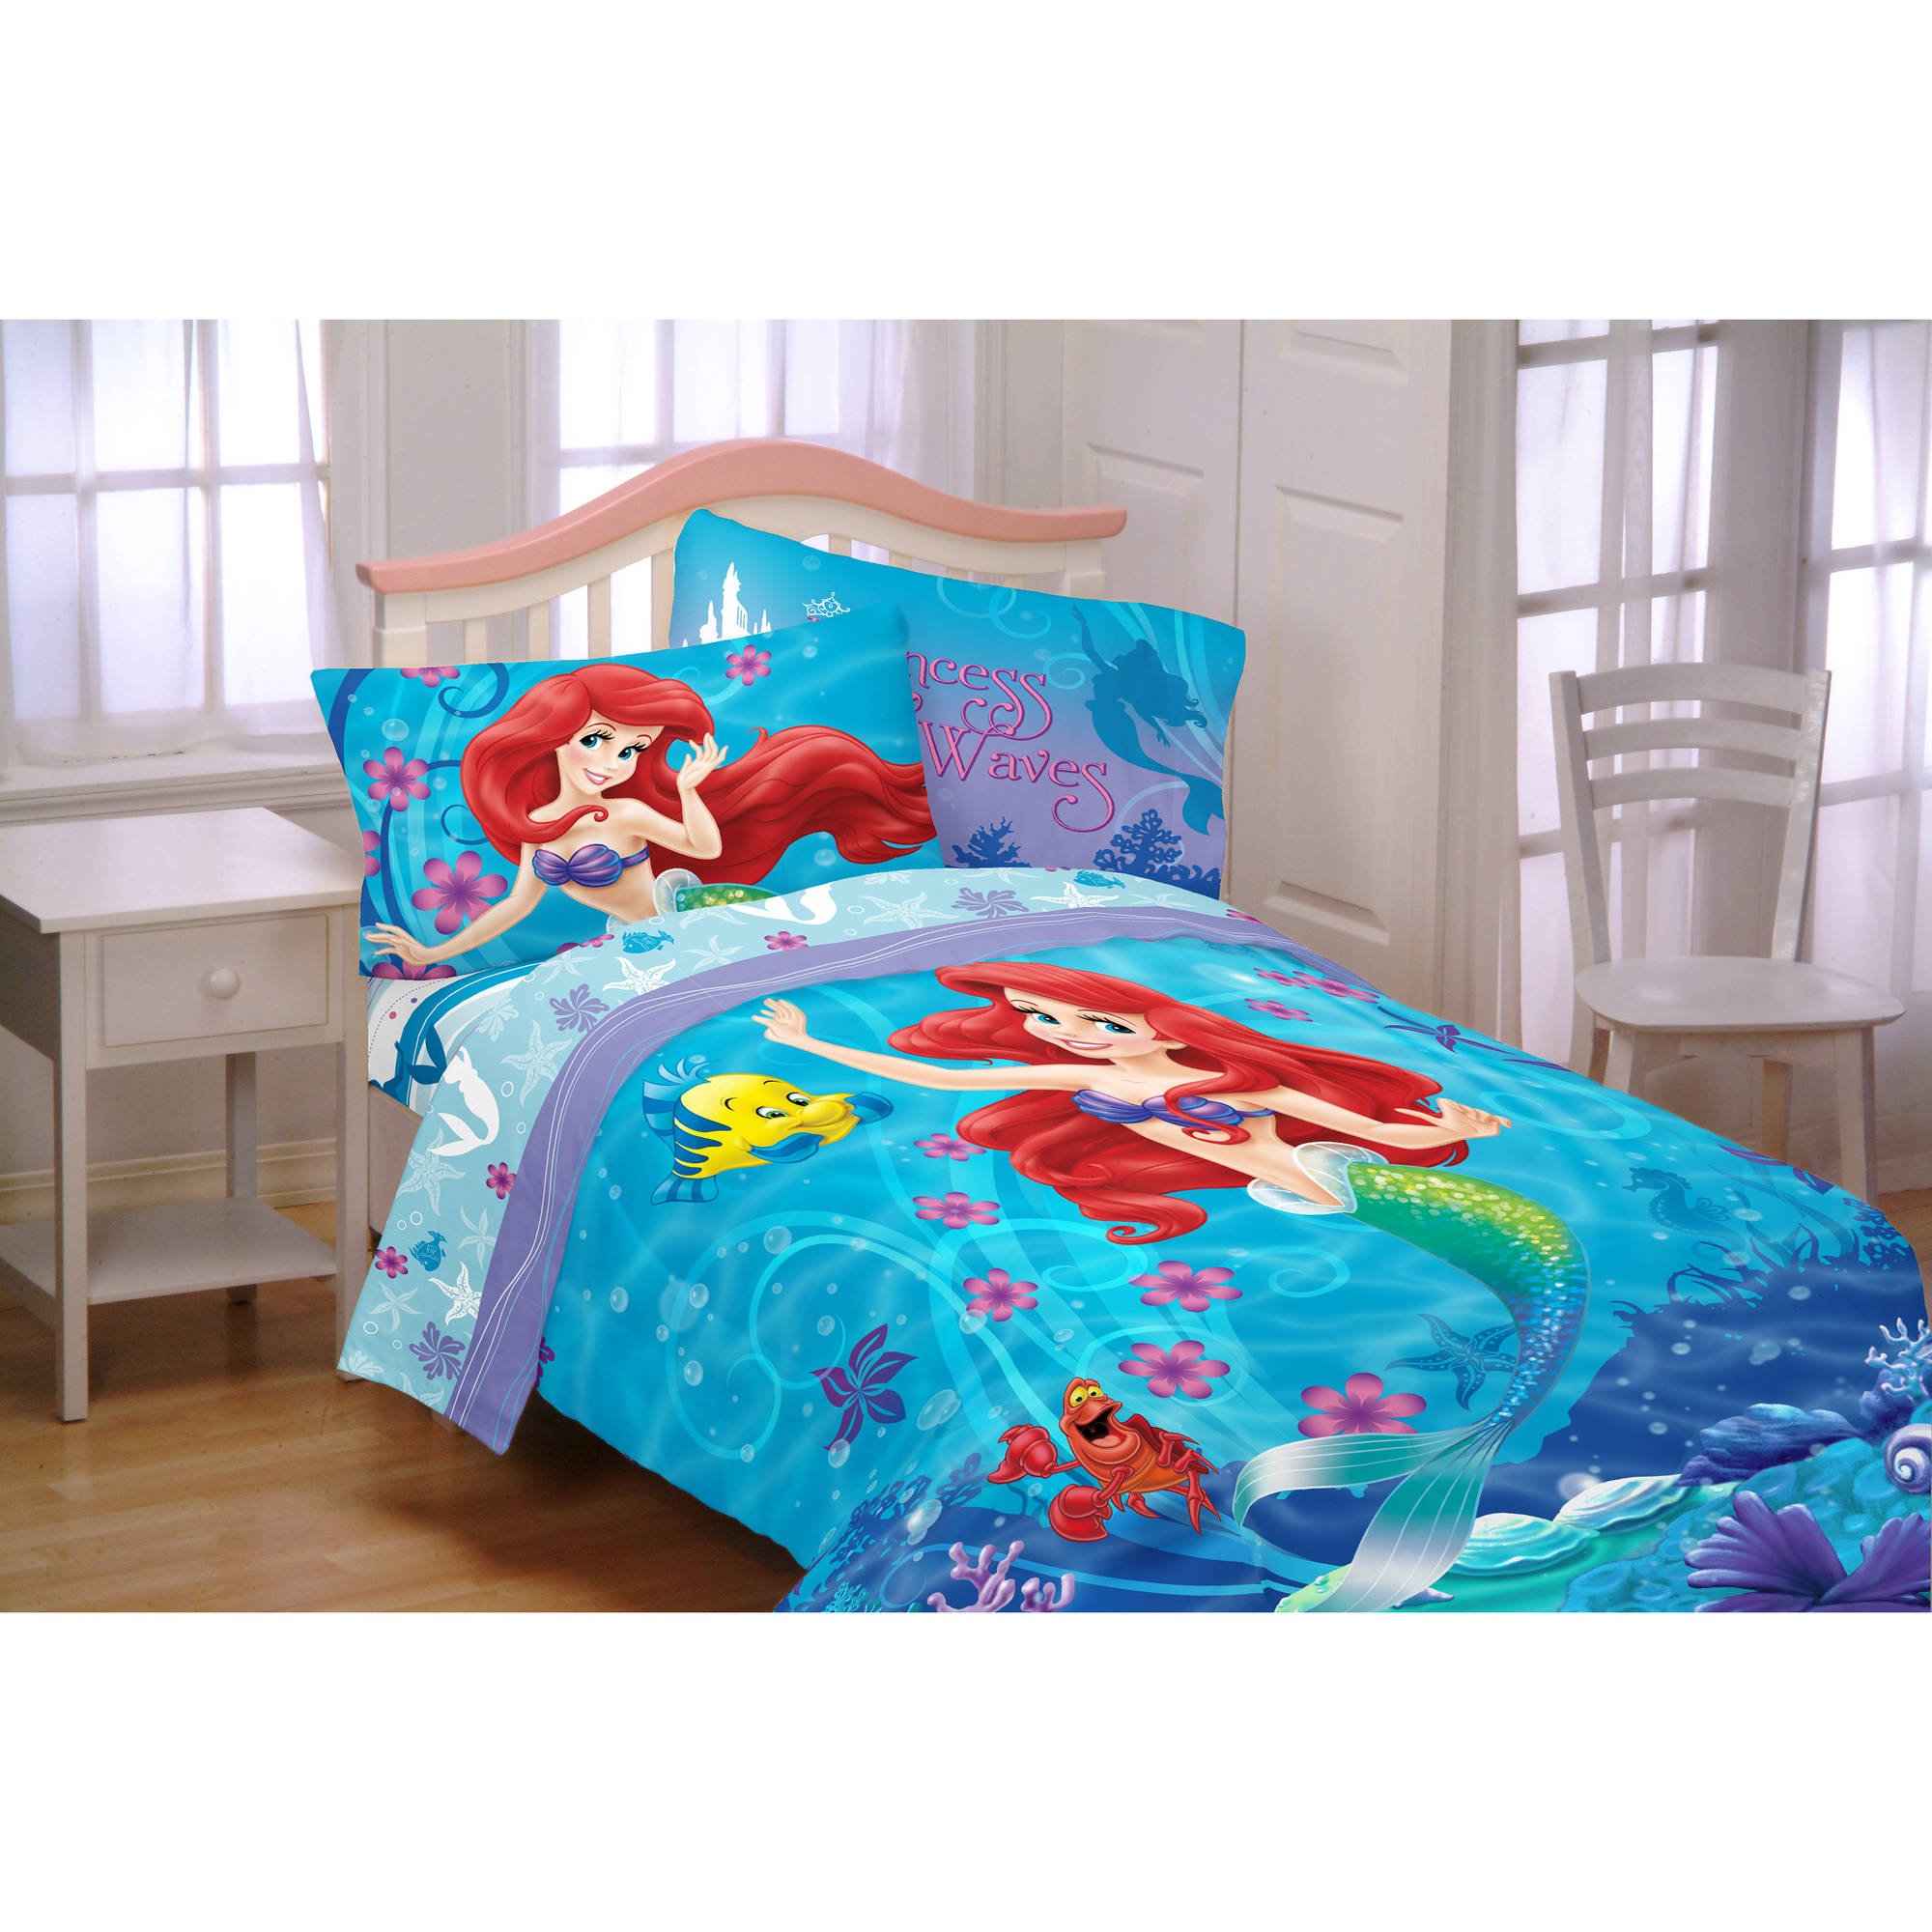 Disney Little Mermaid Ariel Girls Twin, Disney Cars Twin Size 4 Piece Bed In A Bag